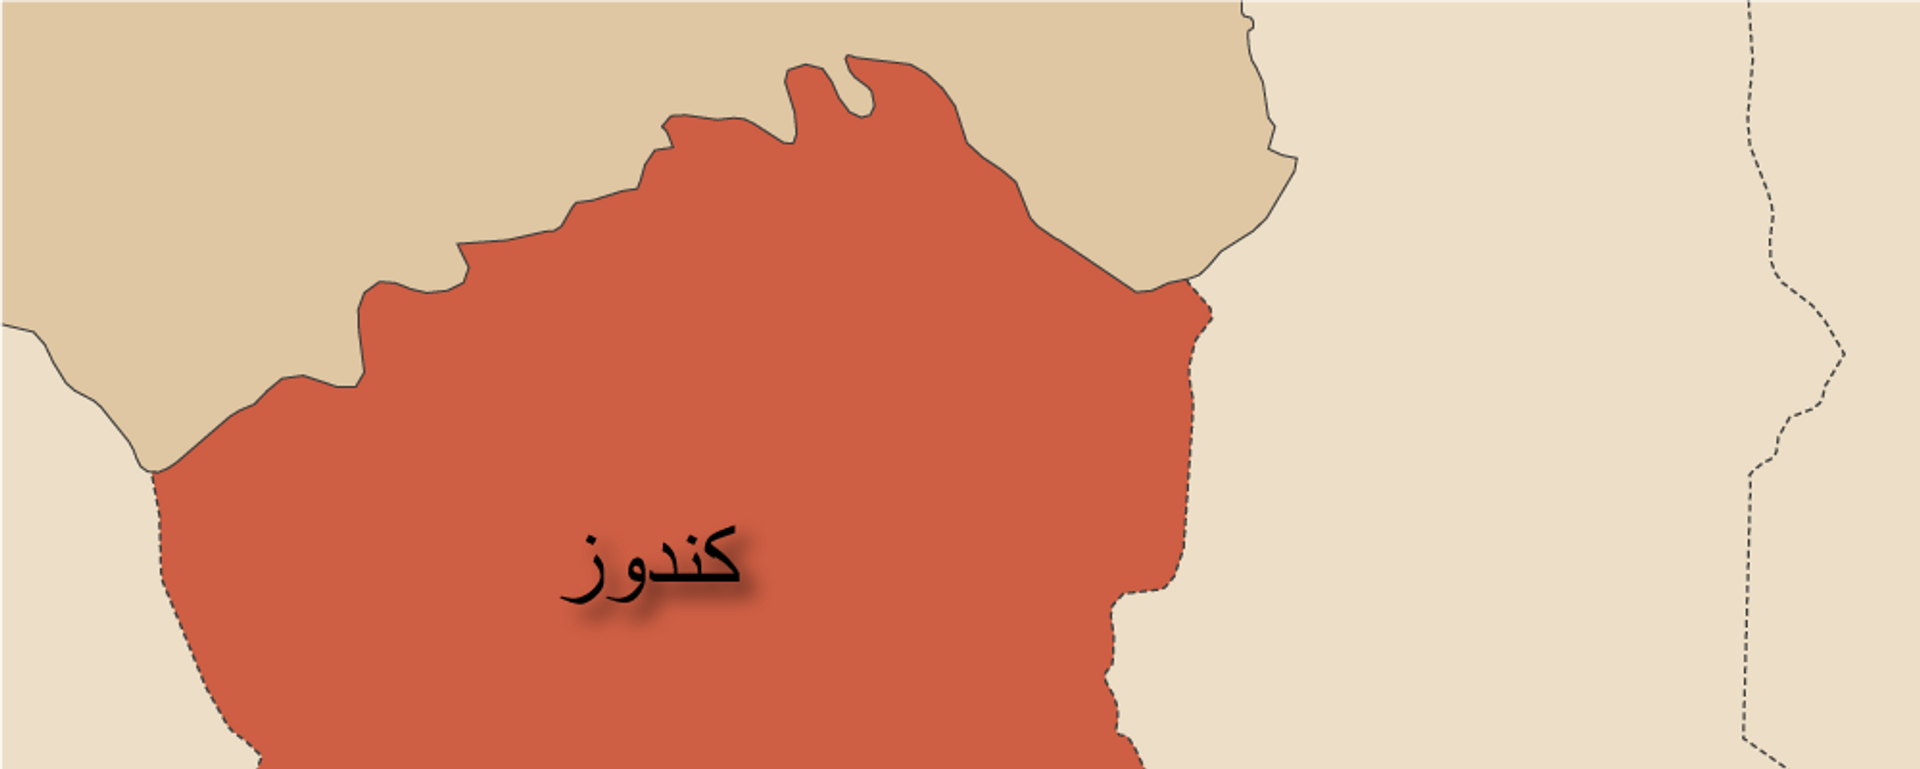   کشته شدن شش نیروی امنیتی در حمله طالبان در کندز   - اسپوتنیک افغانستان  , 1920, 13.02.2021